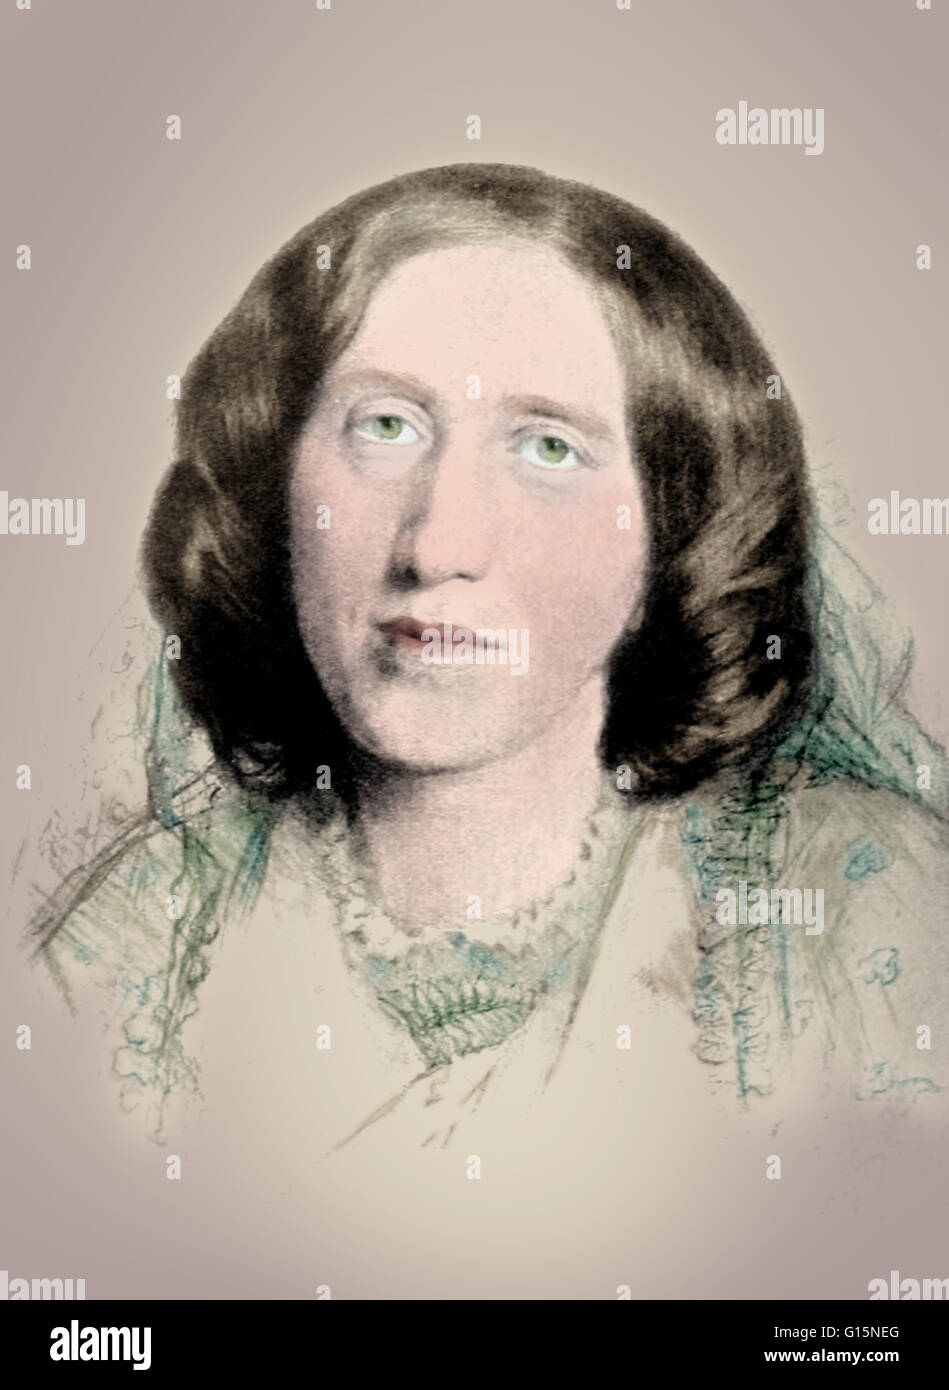 Color-enhanced ritratto di Mary Anne (in alternativa Mary Ann o Marian) Evans (novembre 22,1819 - 22 dicembre 1880), meglio conosciuto con la sua penna nome George Eliot. Lei era un romanziere inglese, giornalista e traduttore, e uno dei maggiori scrittori del Foto Stock